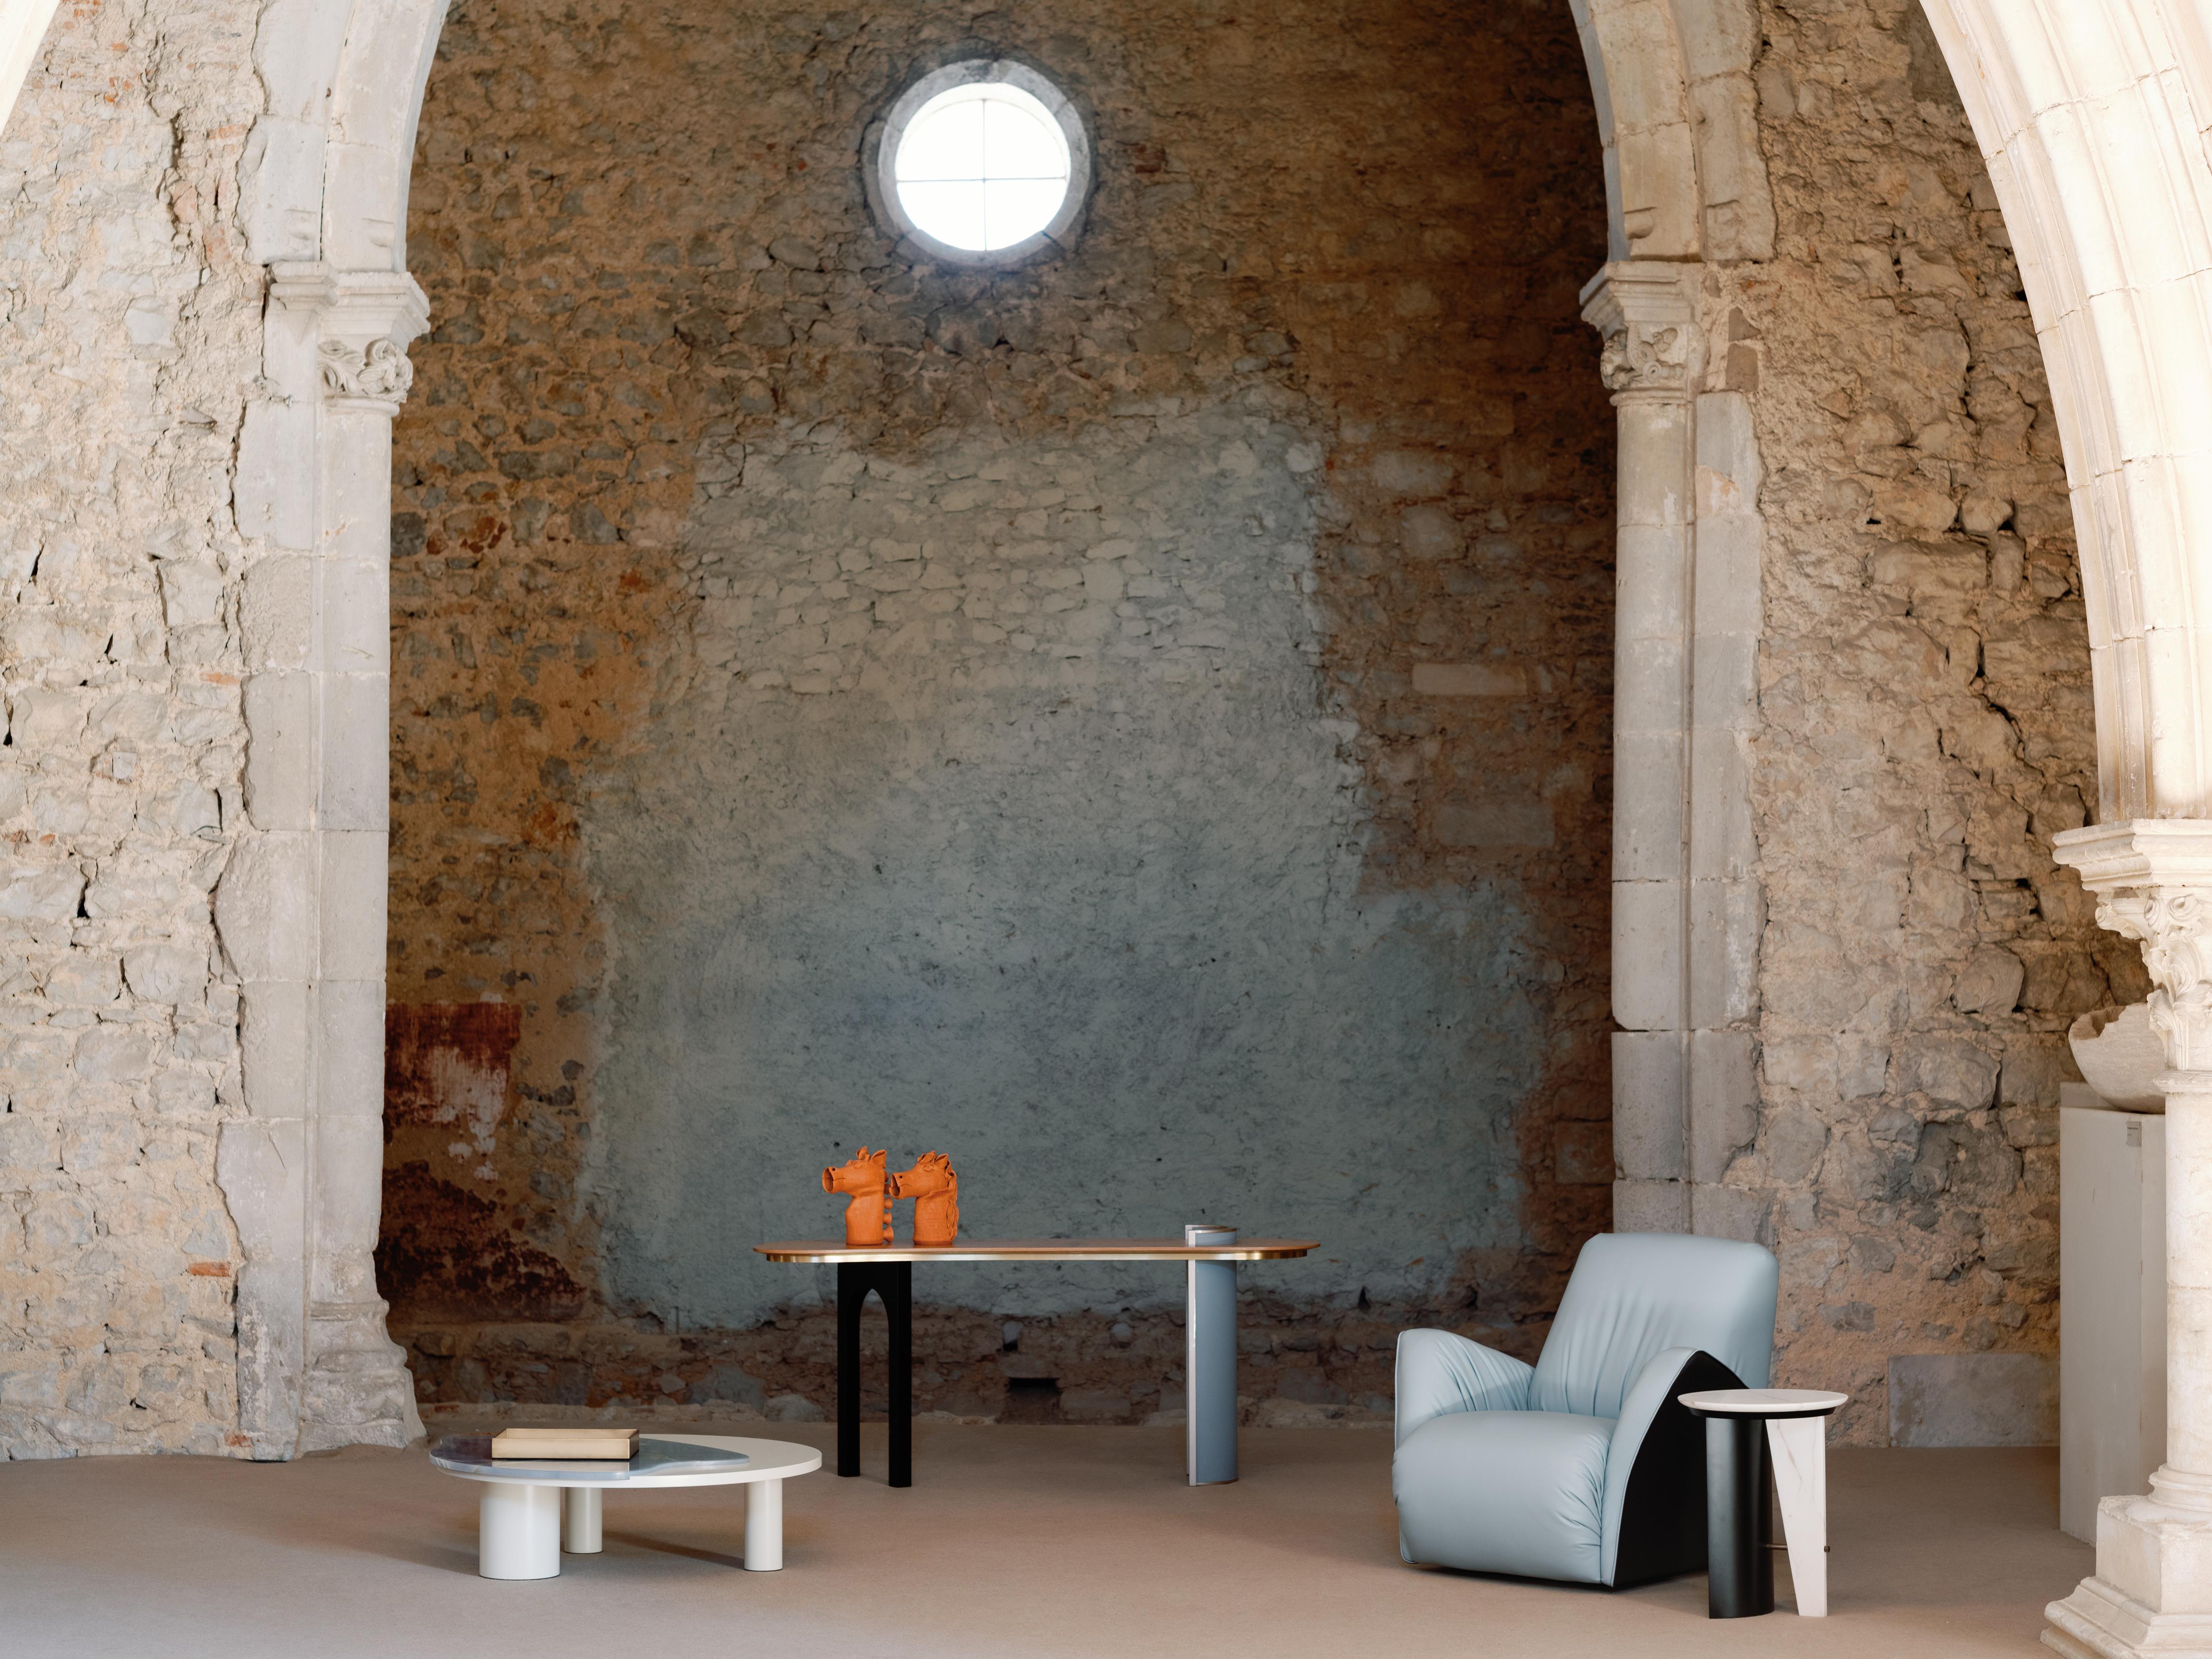 Fauteuil pivotant Caramulo, Collection S, fabriqué à la main au Portugal - Europe par GF Modern.

Découvrez l'incarnation d'un confort et d'une élégance inégalés avec le fauteuil Caramulo, méticuleusement conçu pour redéfinir l'art de vivre dans le